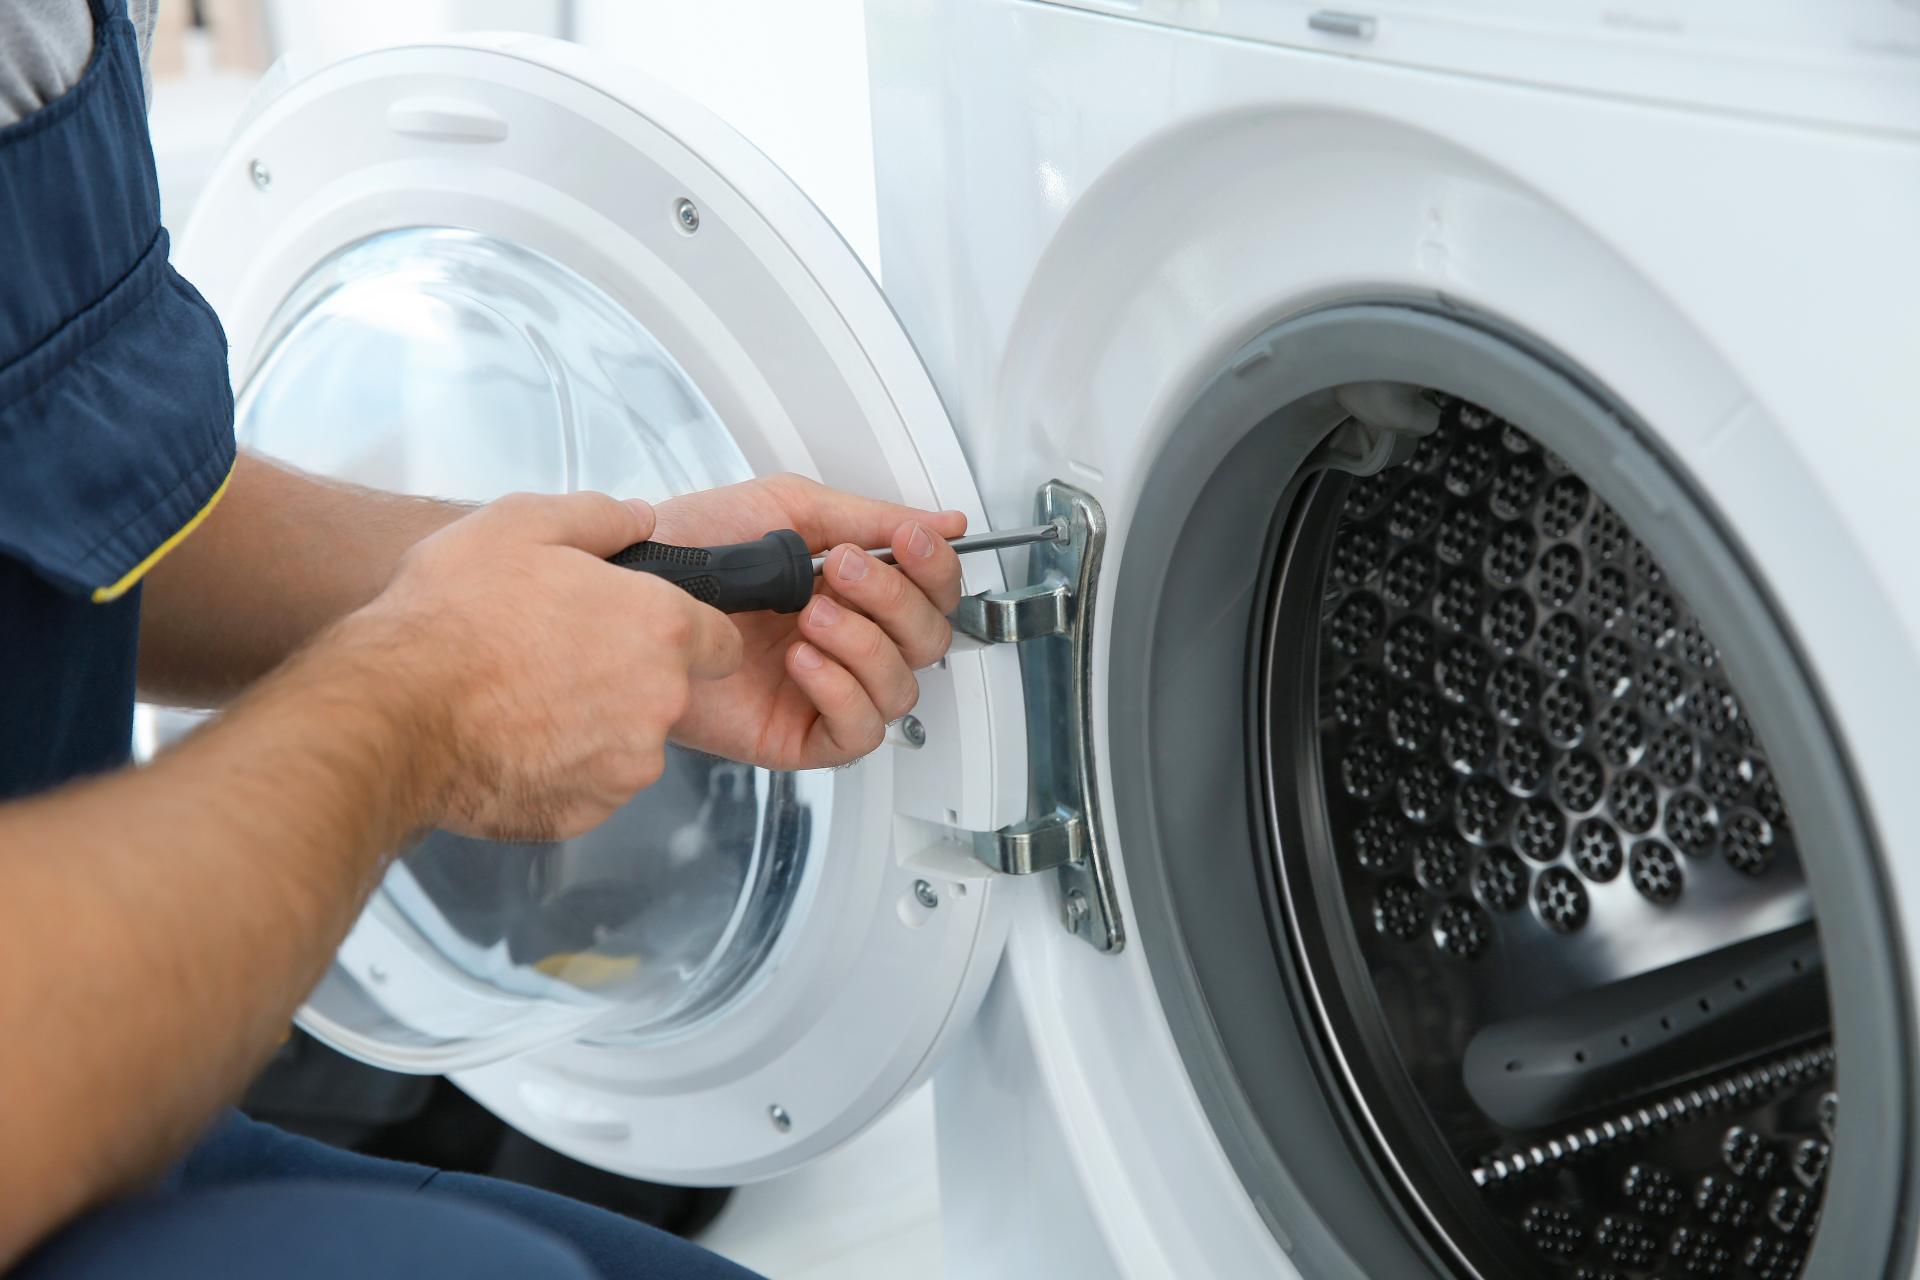 Blanc] Machine à laver Whirlpool ne vidange pas[résolu]